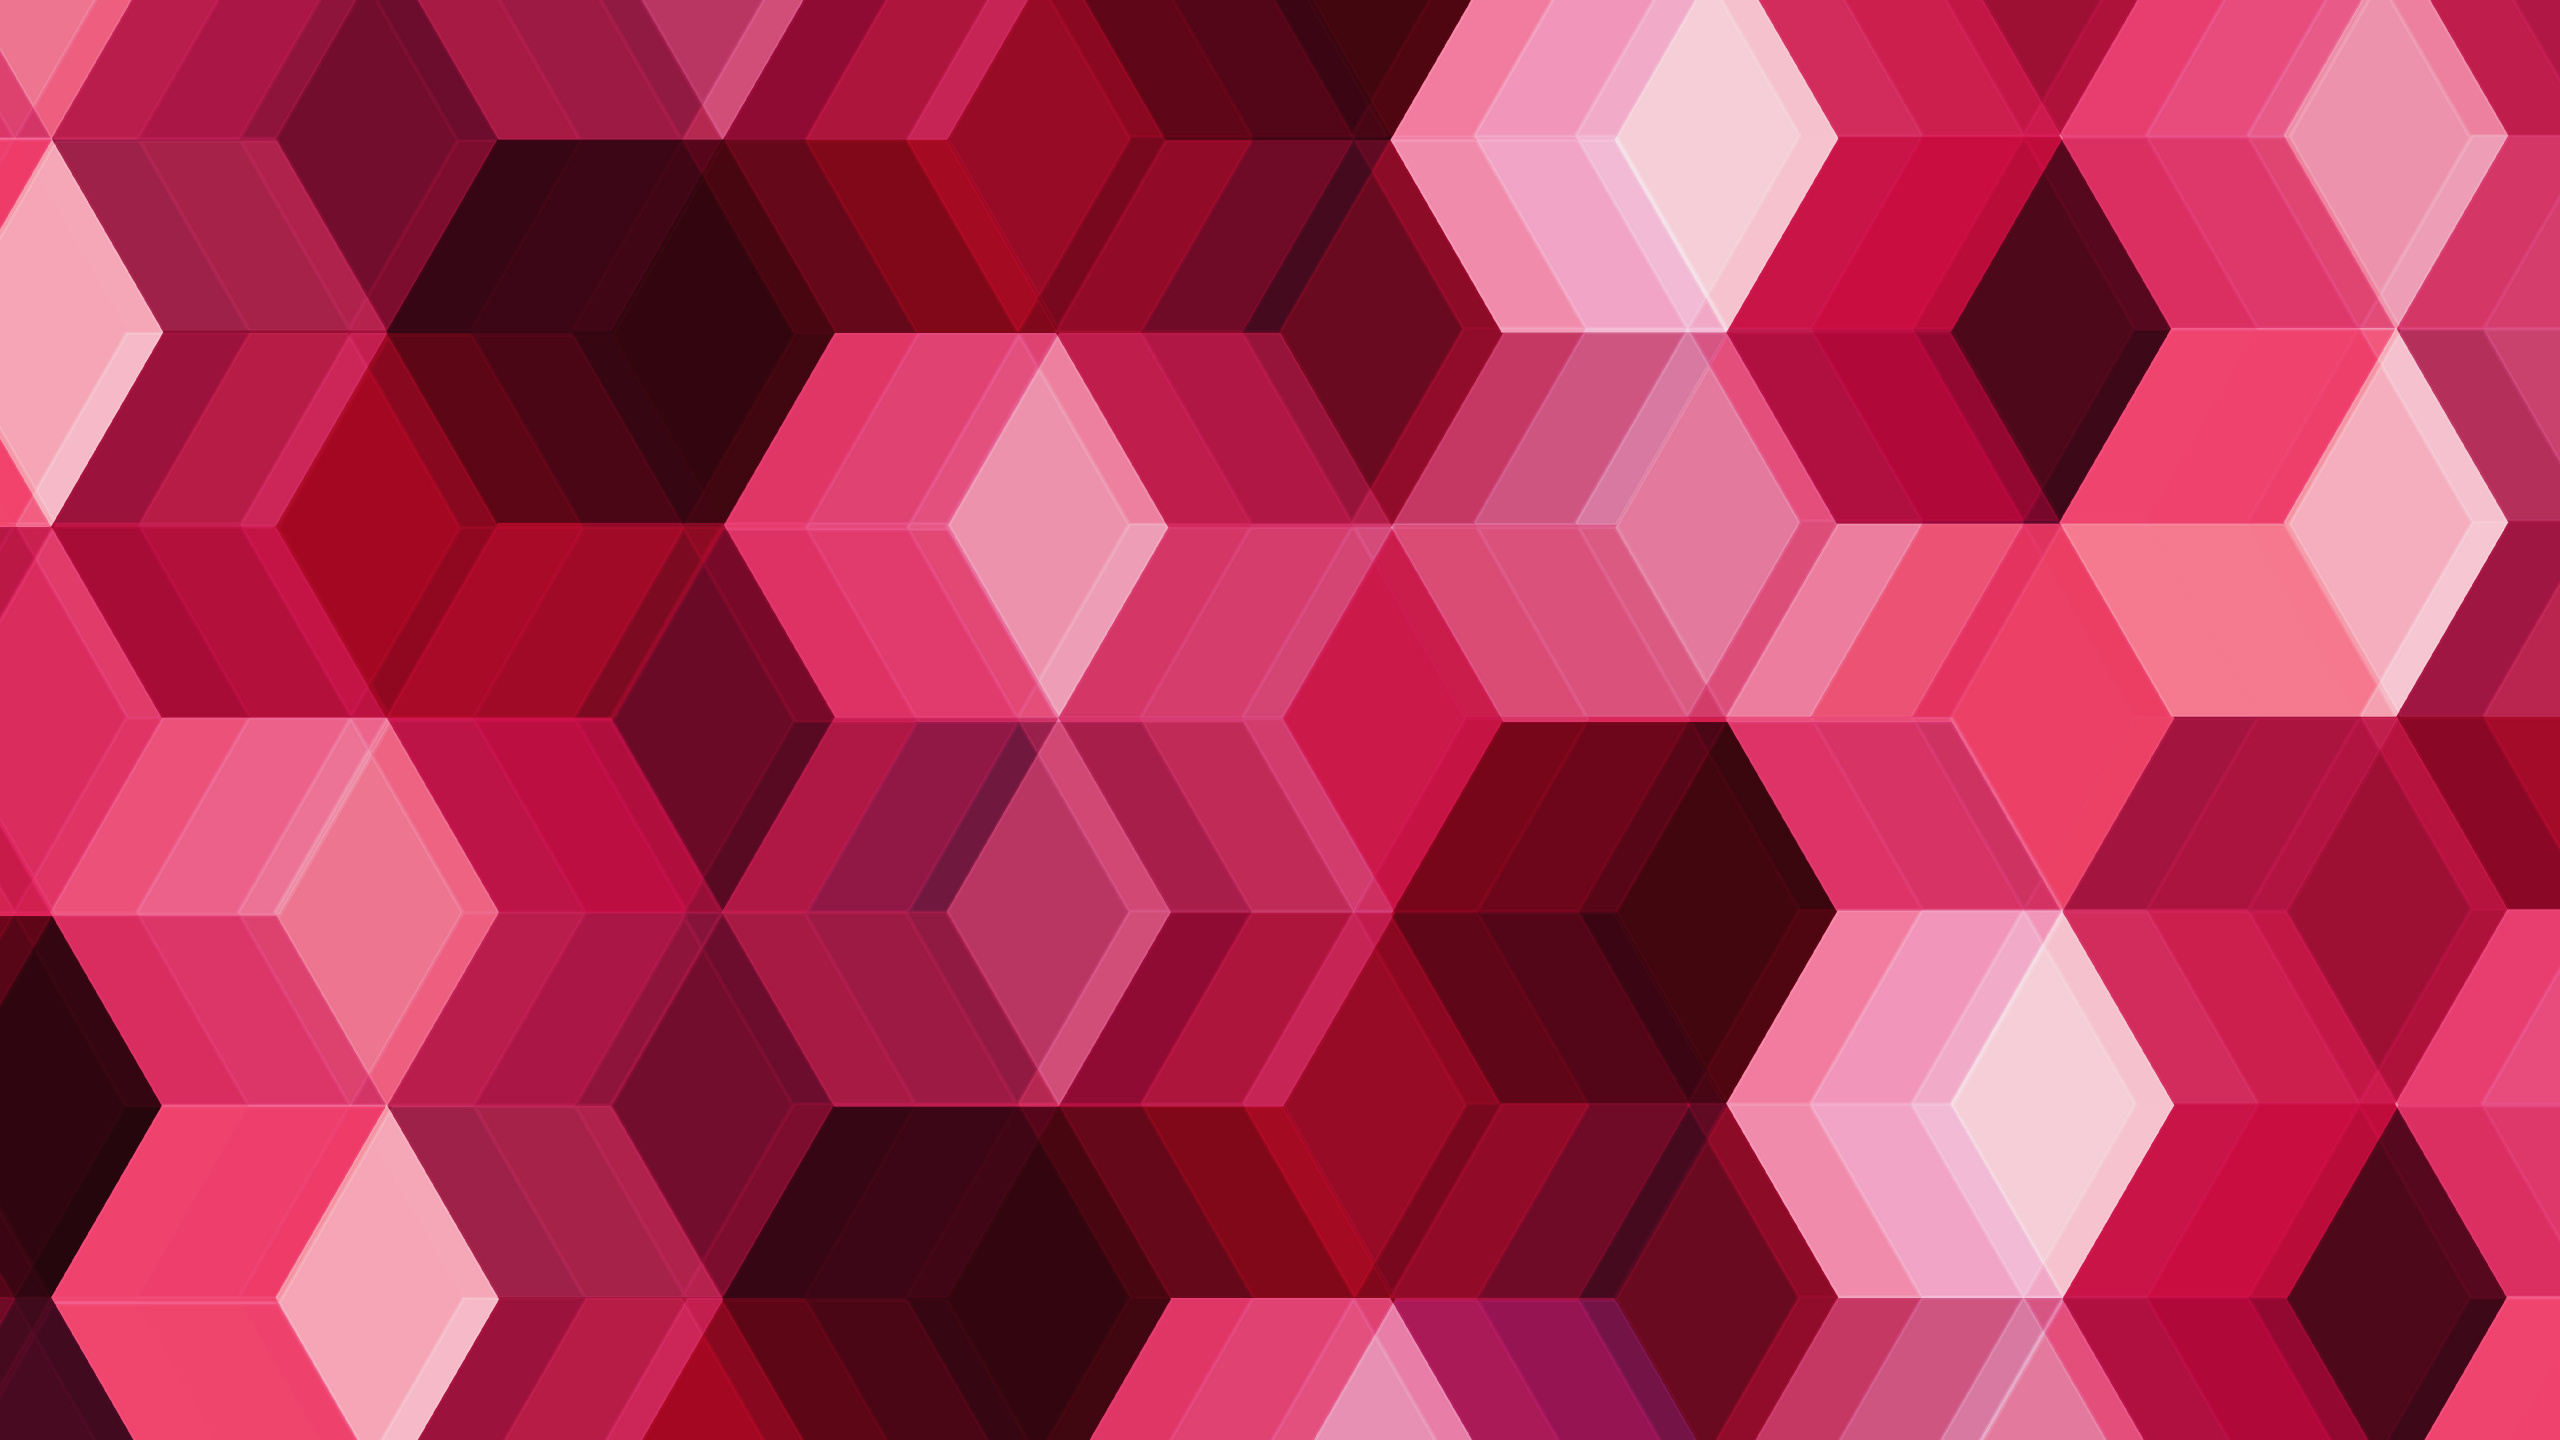 粉红色, 品红色, 对称, 立方体, 形状 壁纸 2560x1440 允许